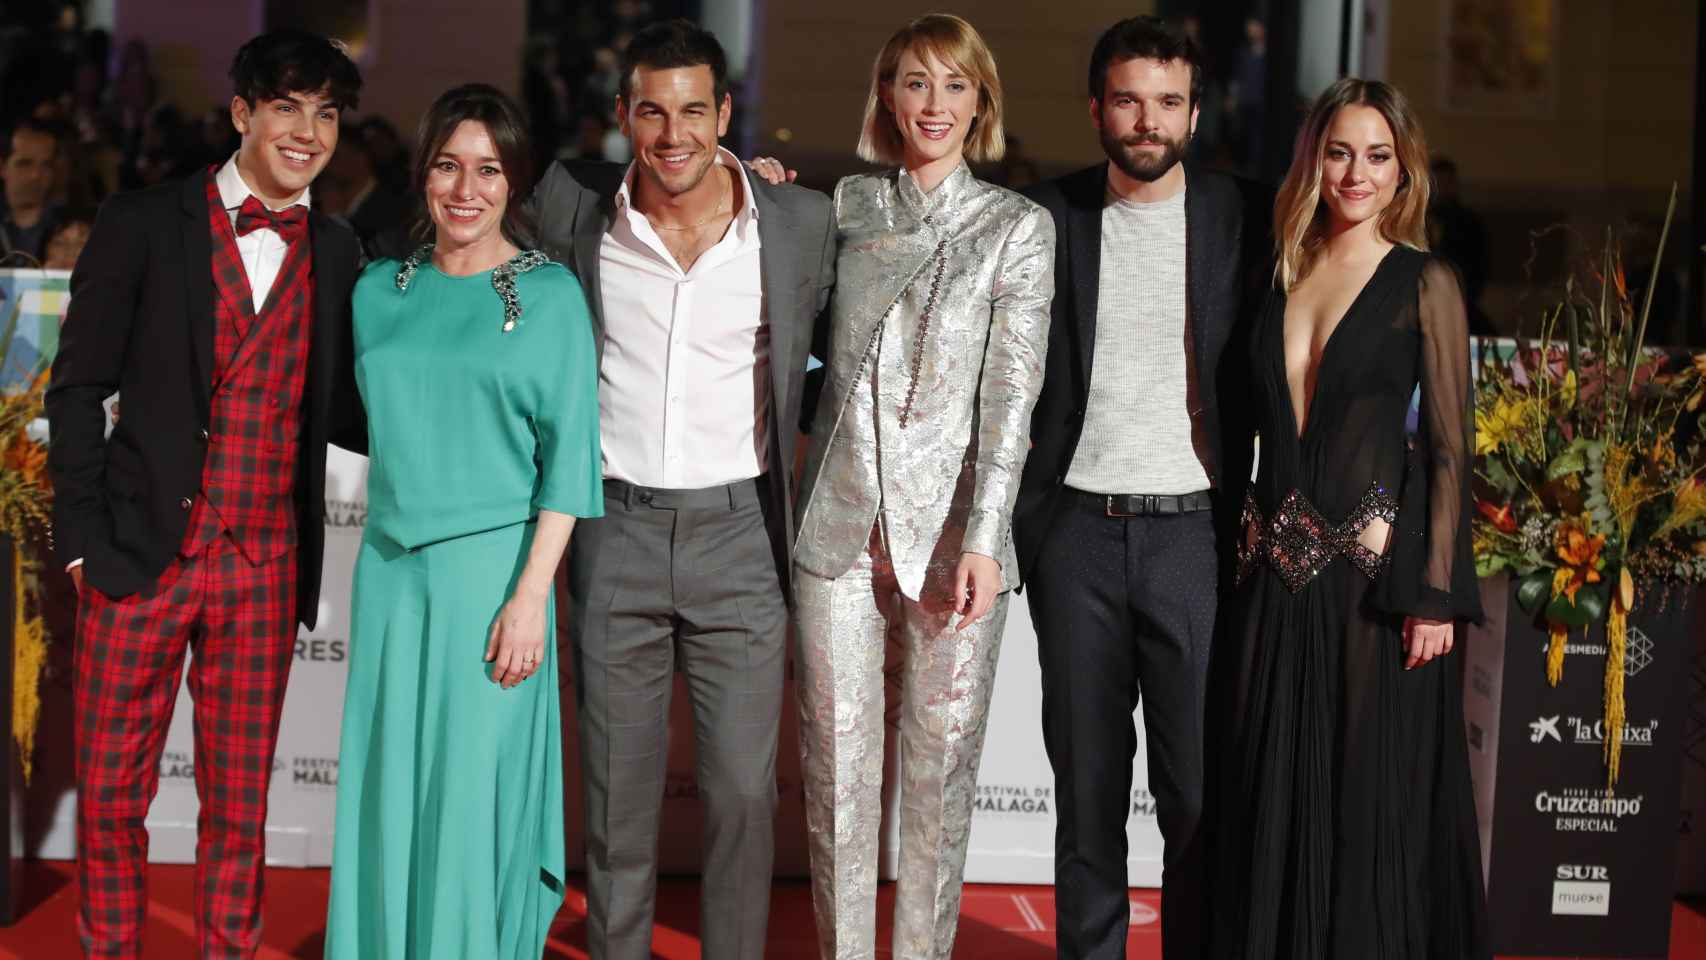 Los actores de 'Instinto', de izquierda a derecha: Óscar Casas, Lola Dueñas, Mario Casas, Ingrid Garcia-Jonnson, Jon Arias y Silvia Alonso.